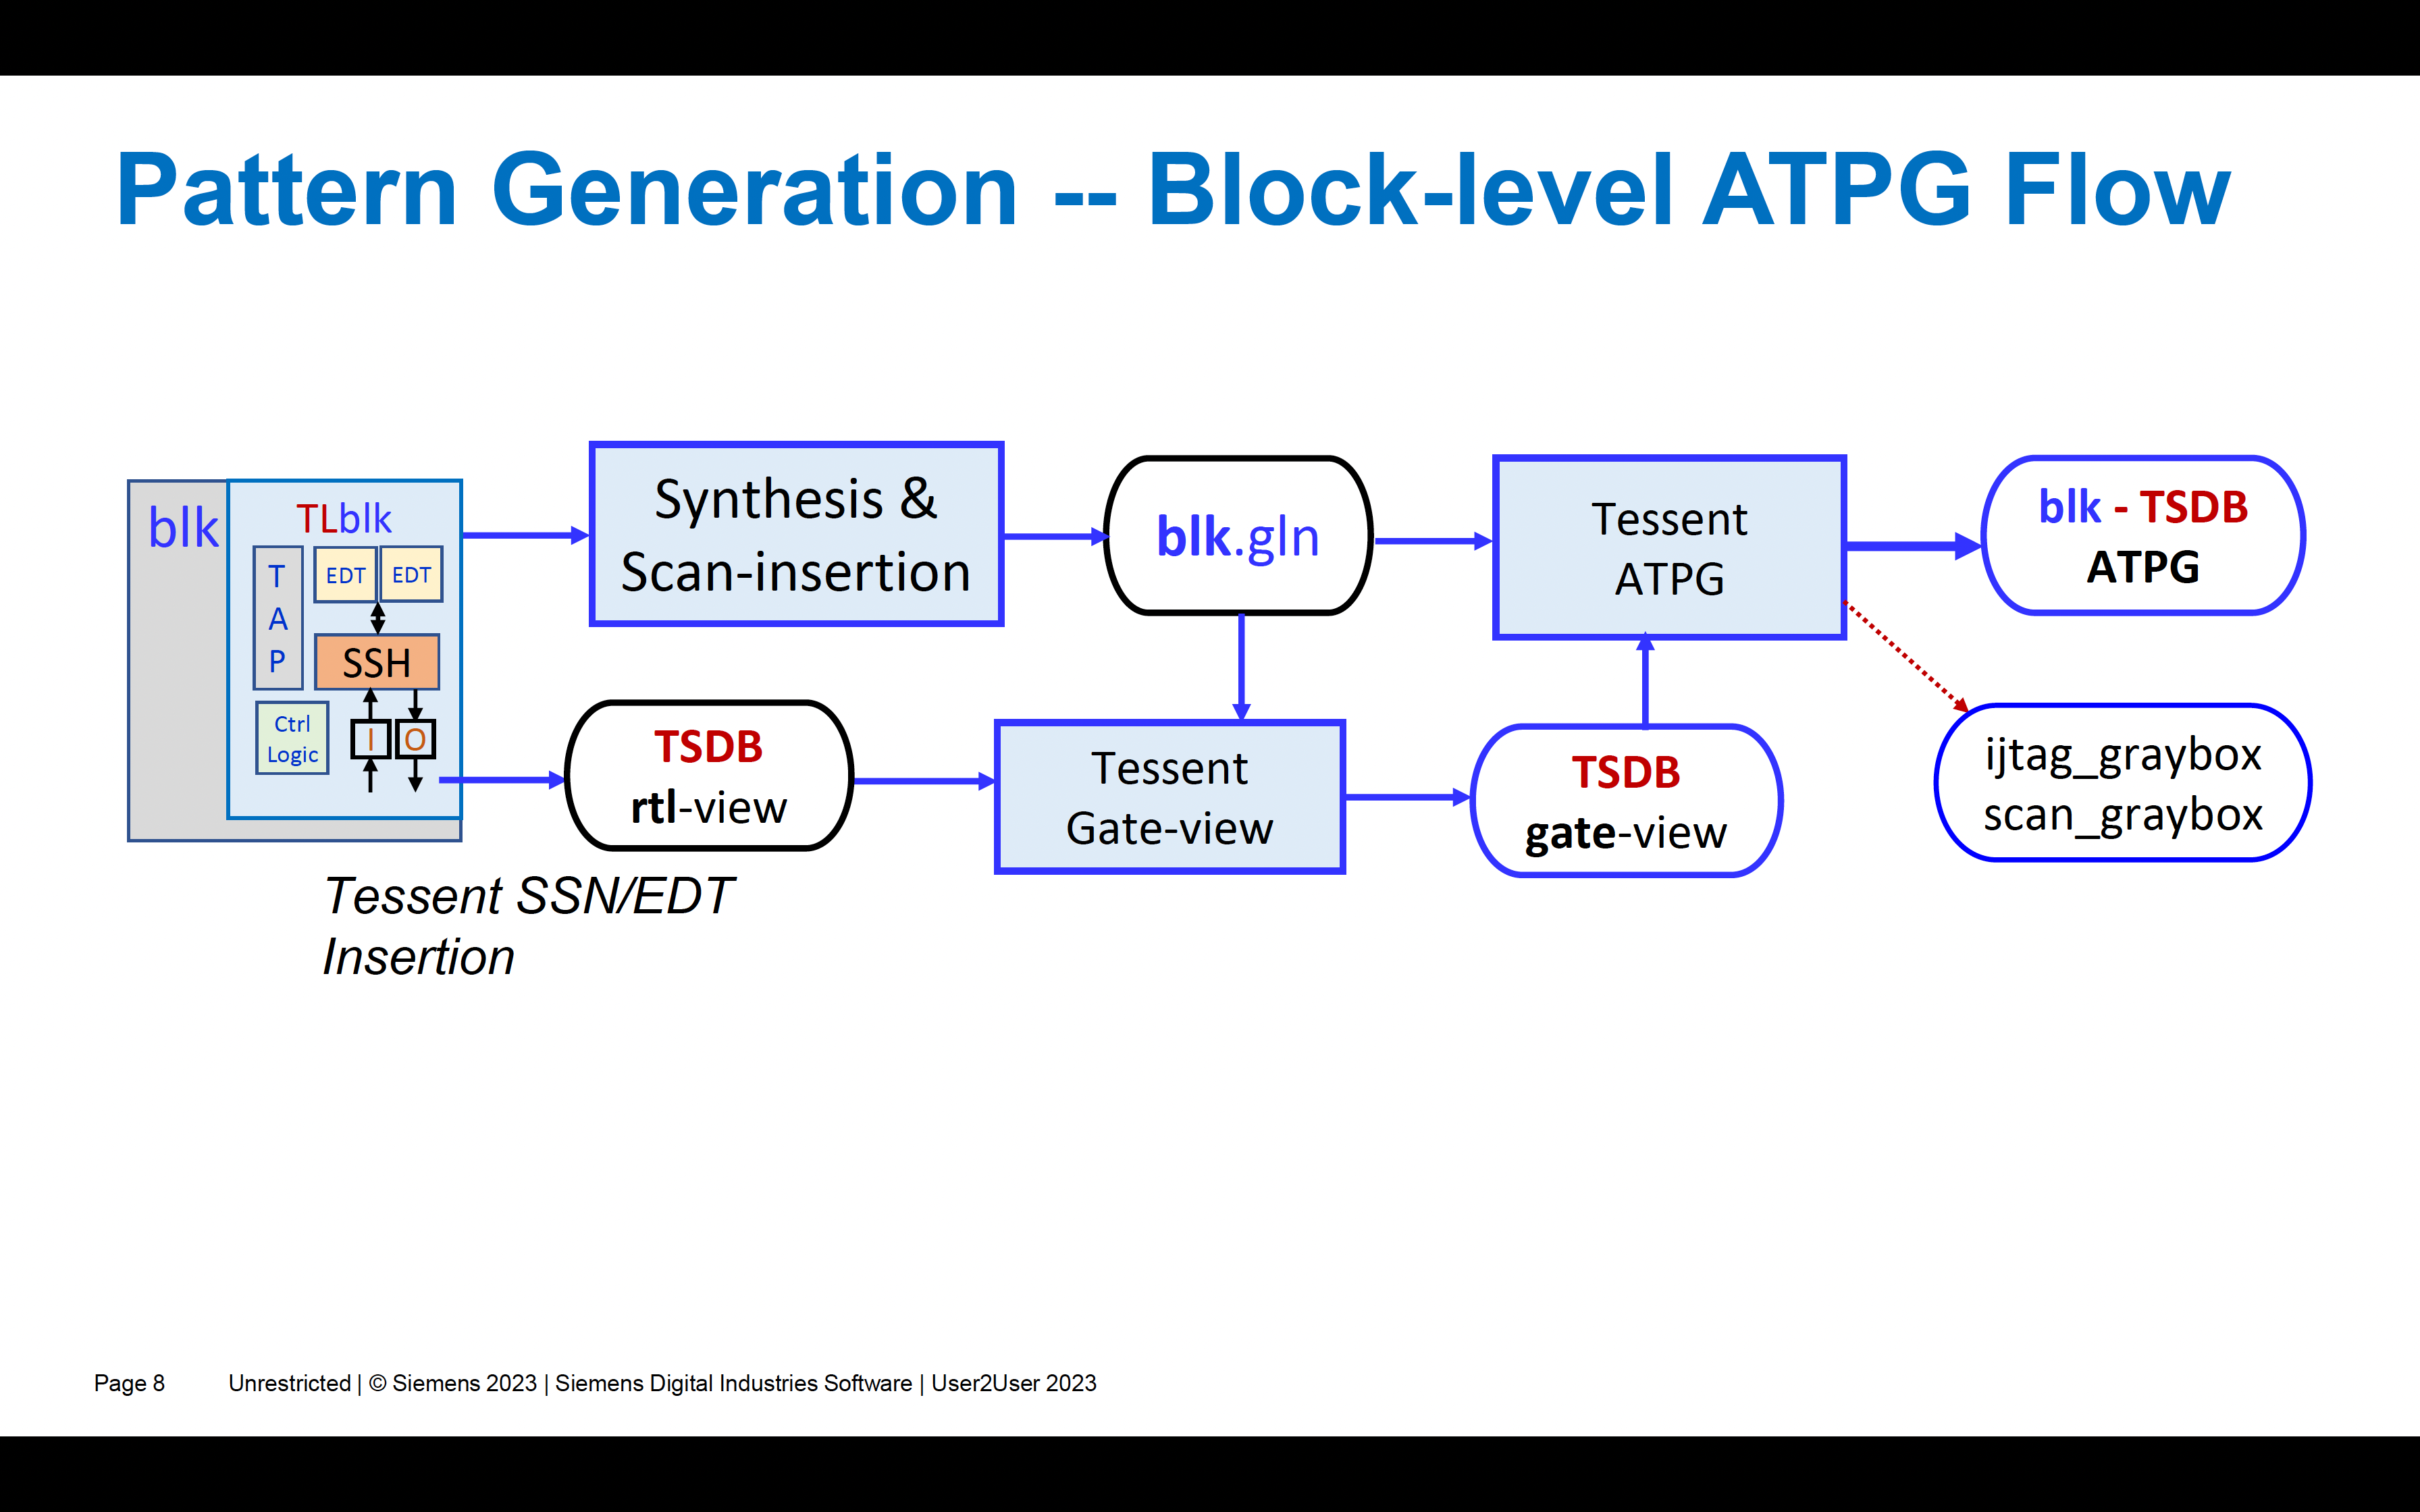 Tessent SSN mahdollistaa merkittävät testiaikasäästöt SoC ATPG:lle